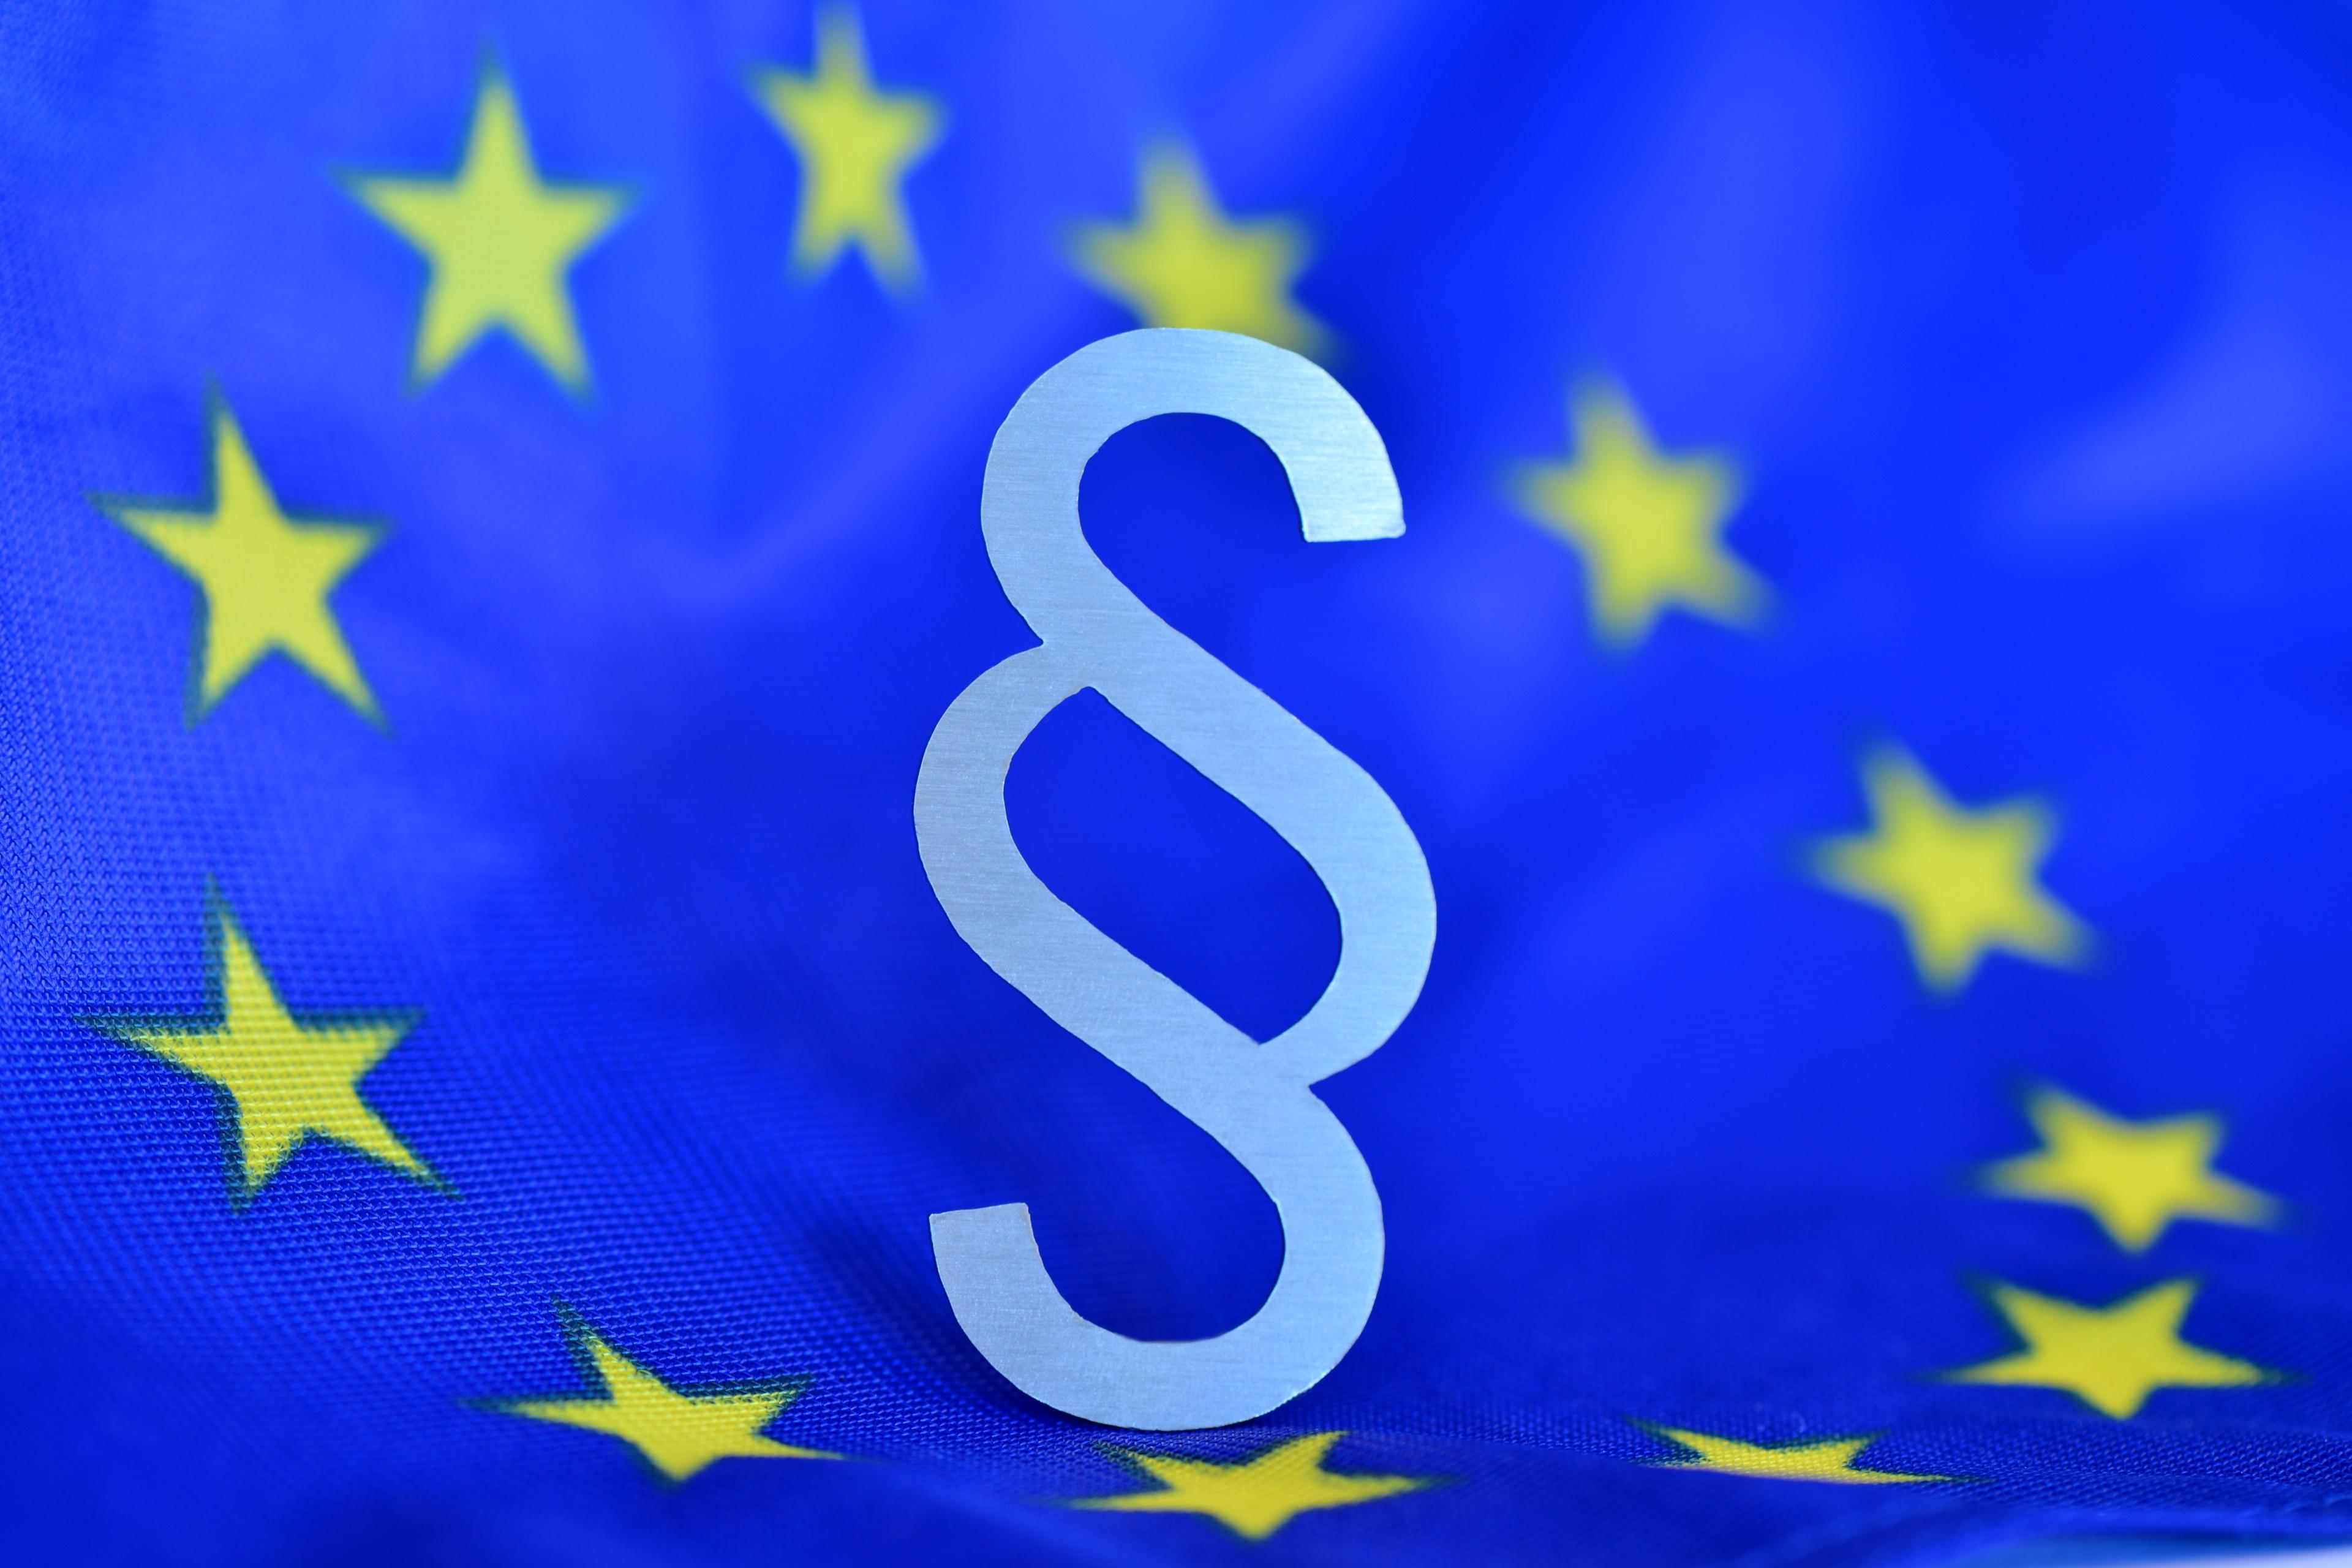 Paragrafenzeichen vor blauer Europaflagge (als Mittelpunkt des Europasternenkreises)